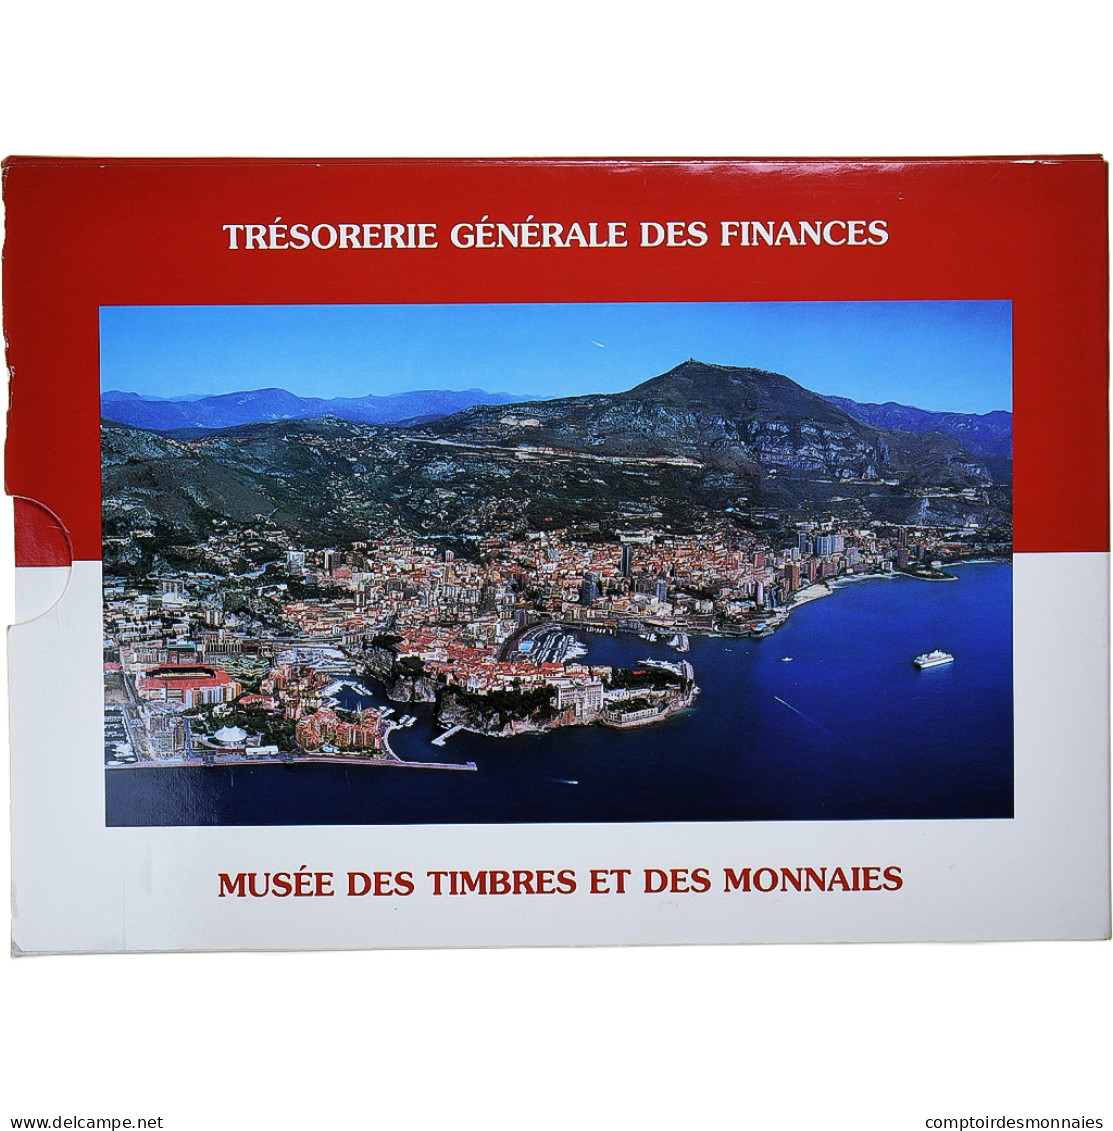 Monaco, Rainier III, Coffret 1c. à 2€, 2002, BU, FDC - Monaco